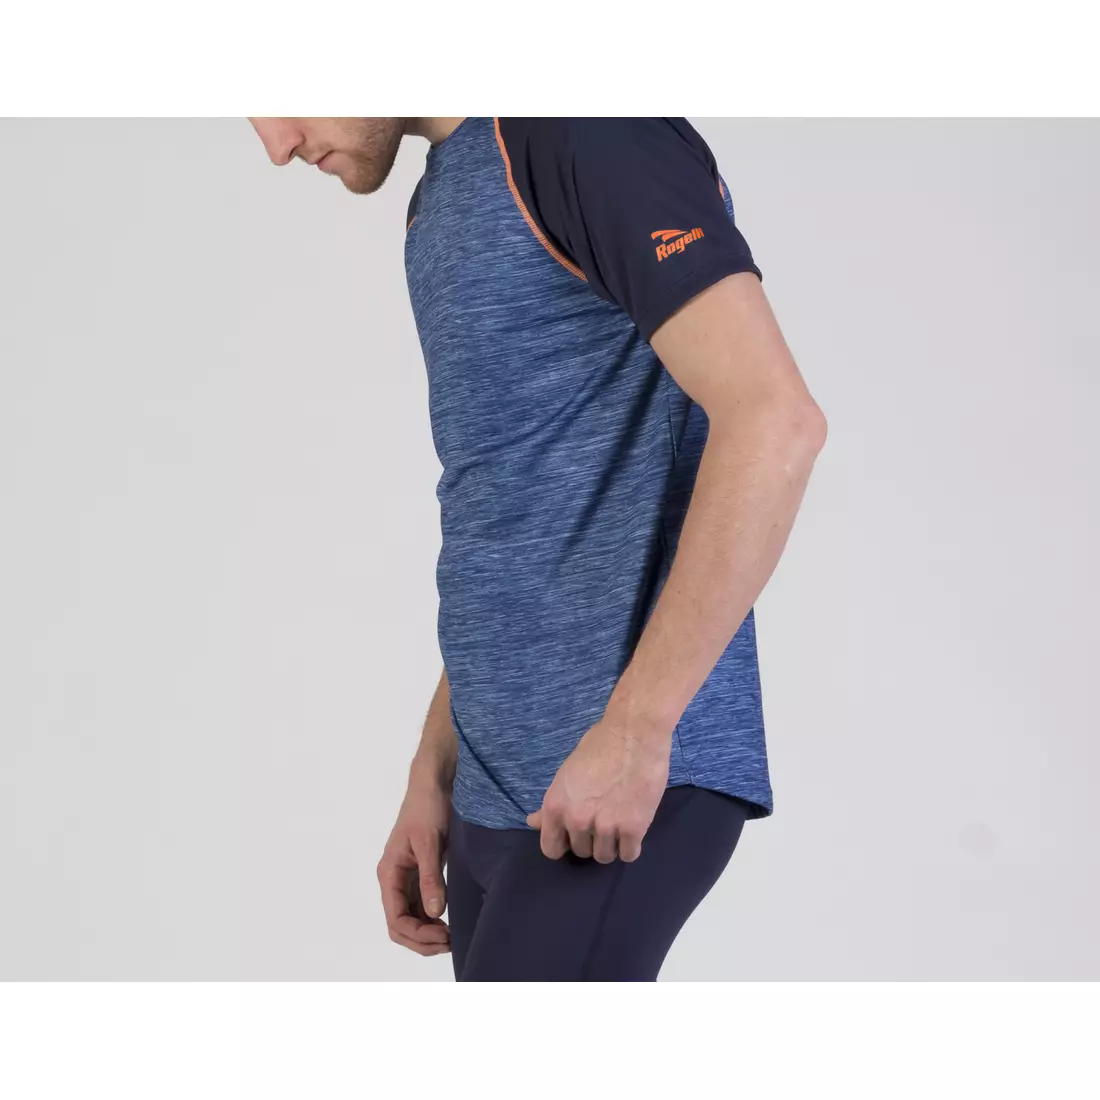 ROGELLI RUN STRUCTURE 830.240 - pánske K/R bežecké tričko, modré a oranžové